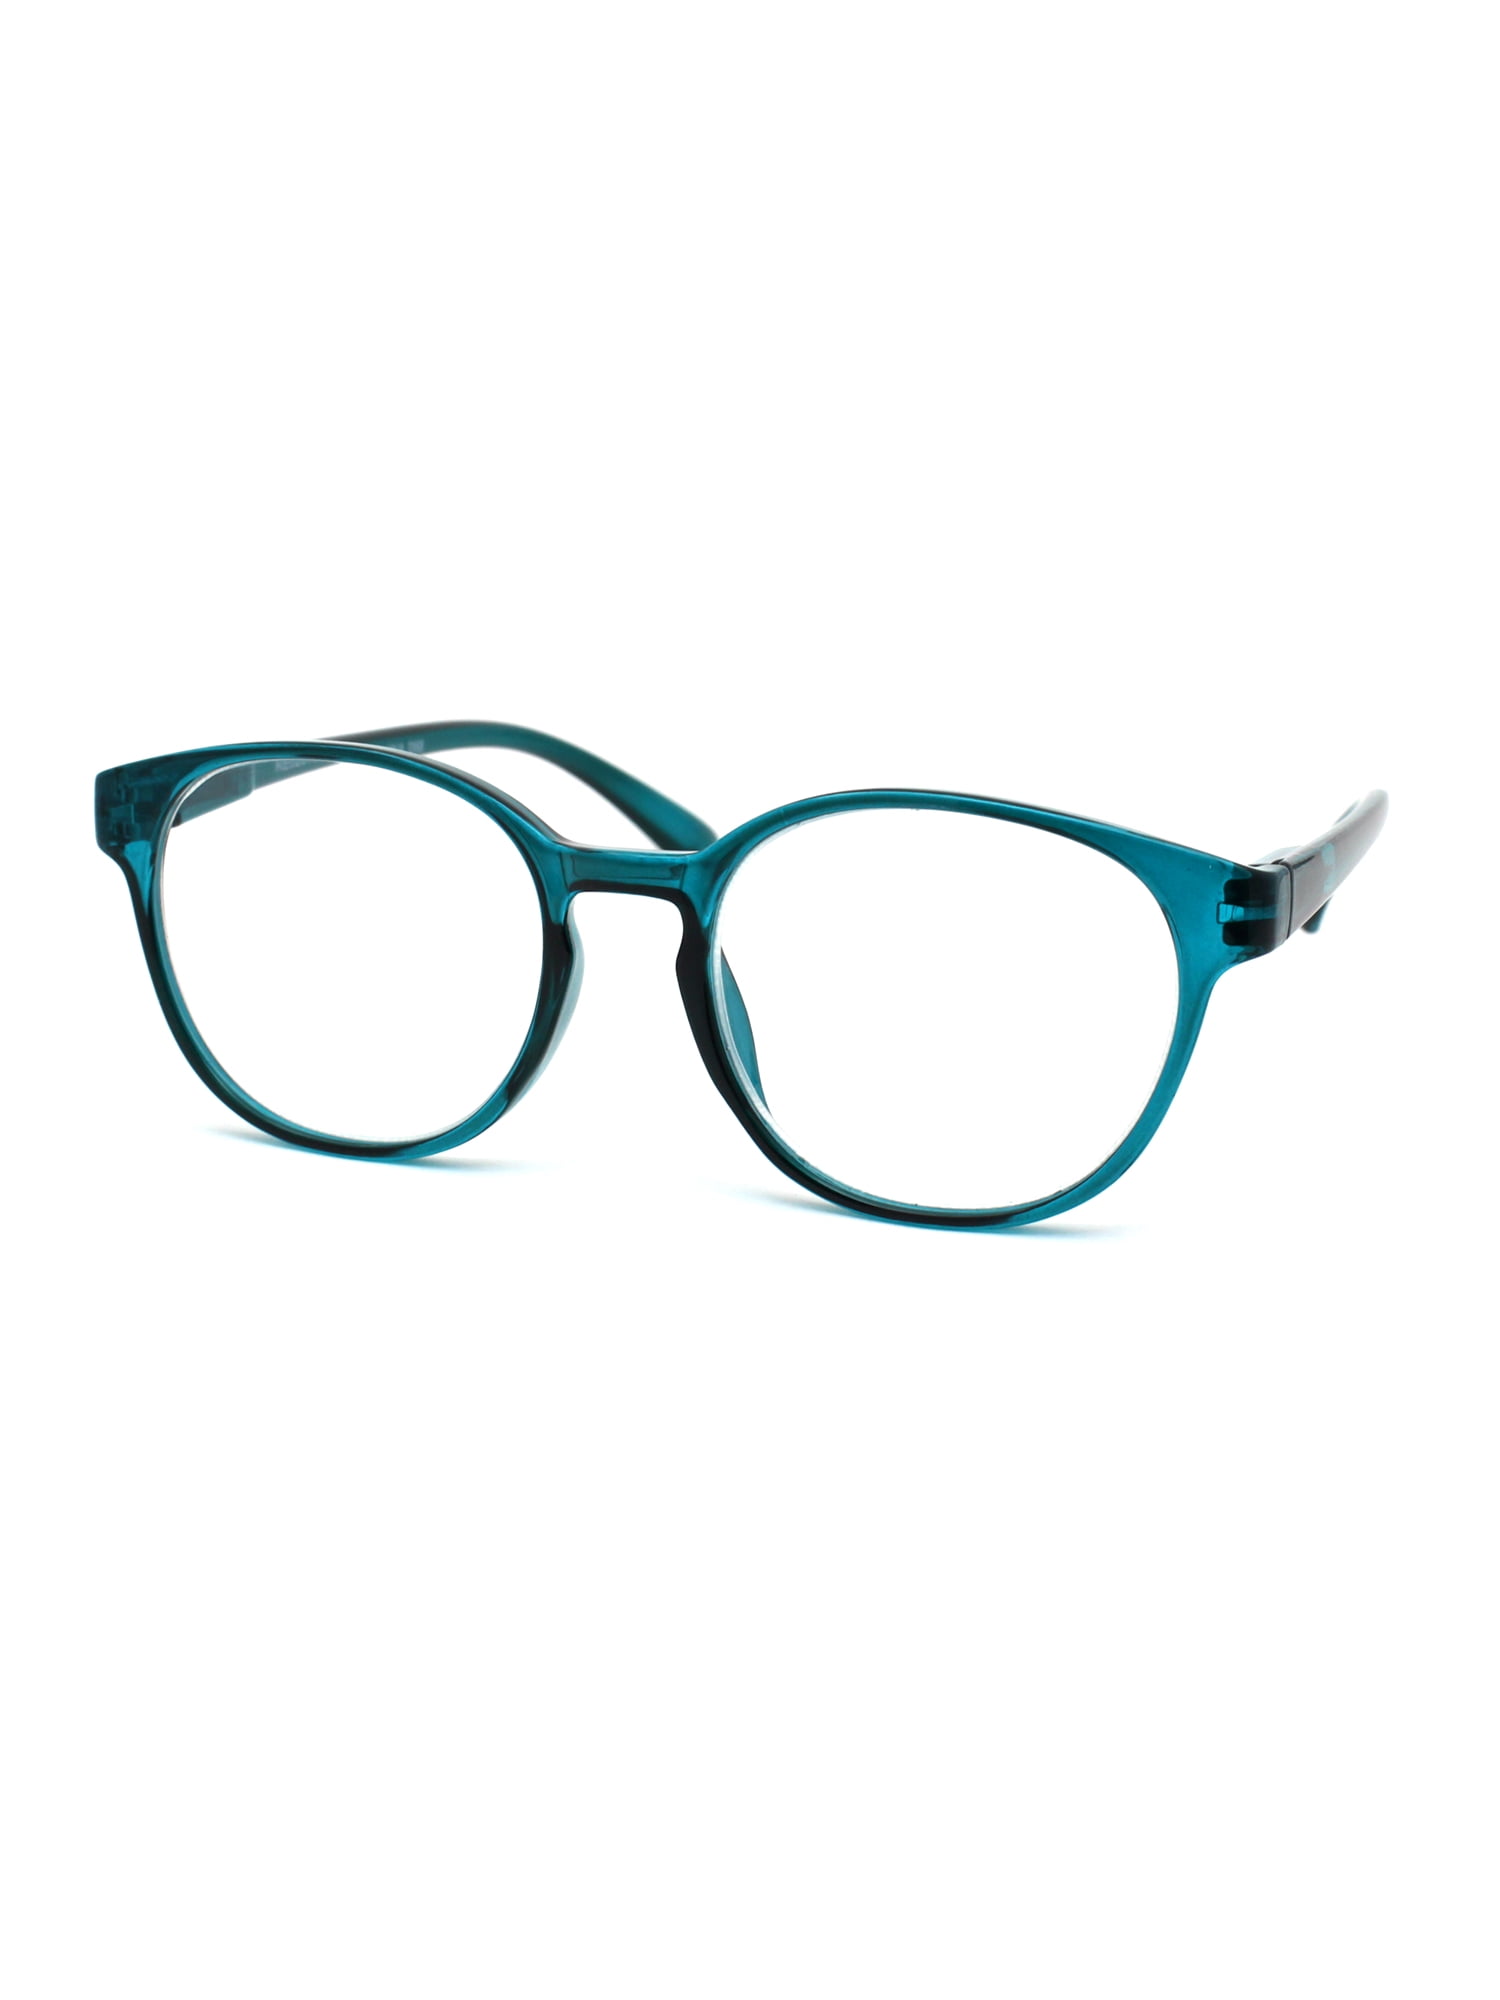 Reading Glasses Magnified Eyeglasses Round Keyhole Fashion Spring Hinge